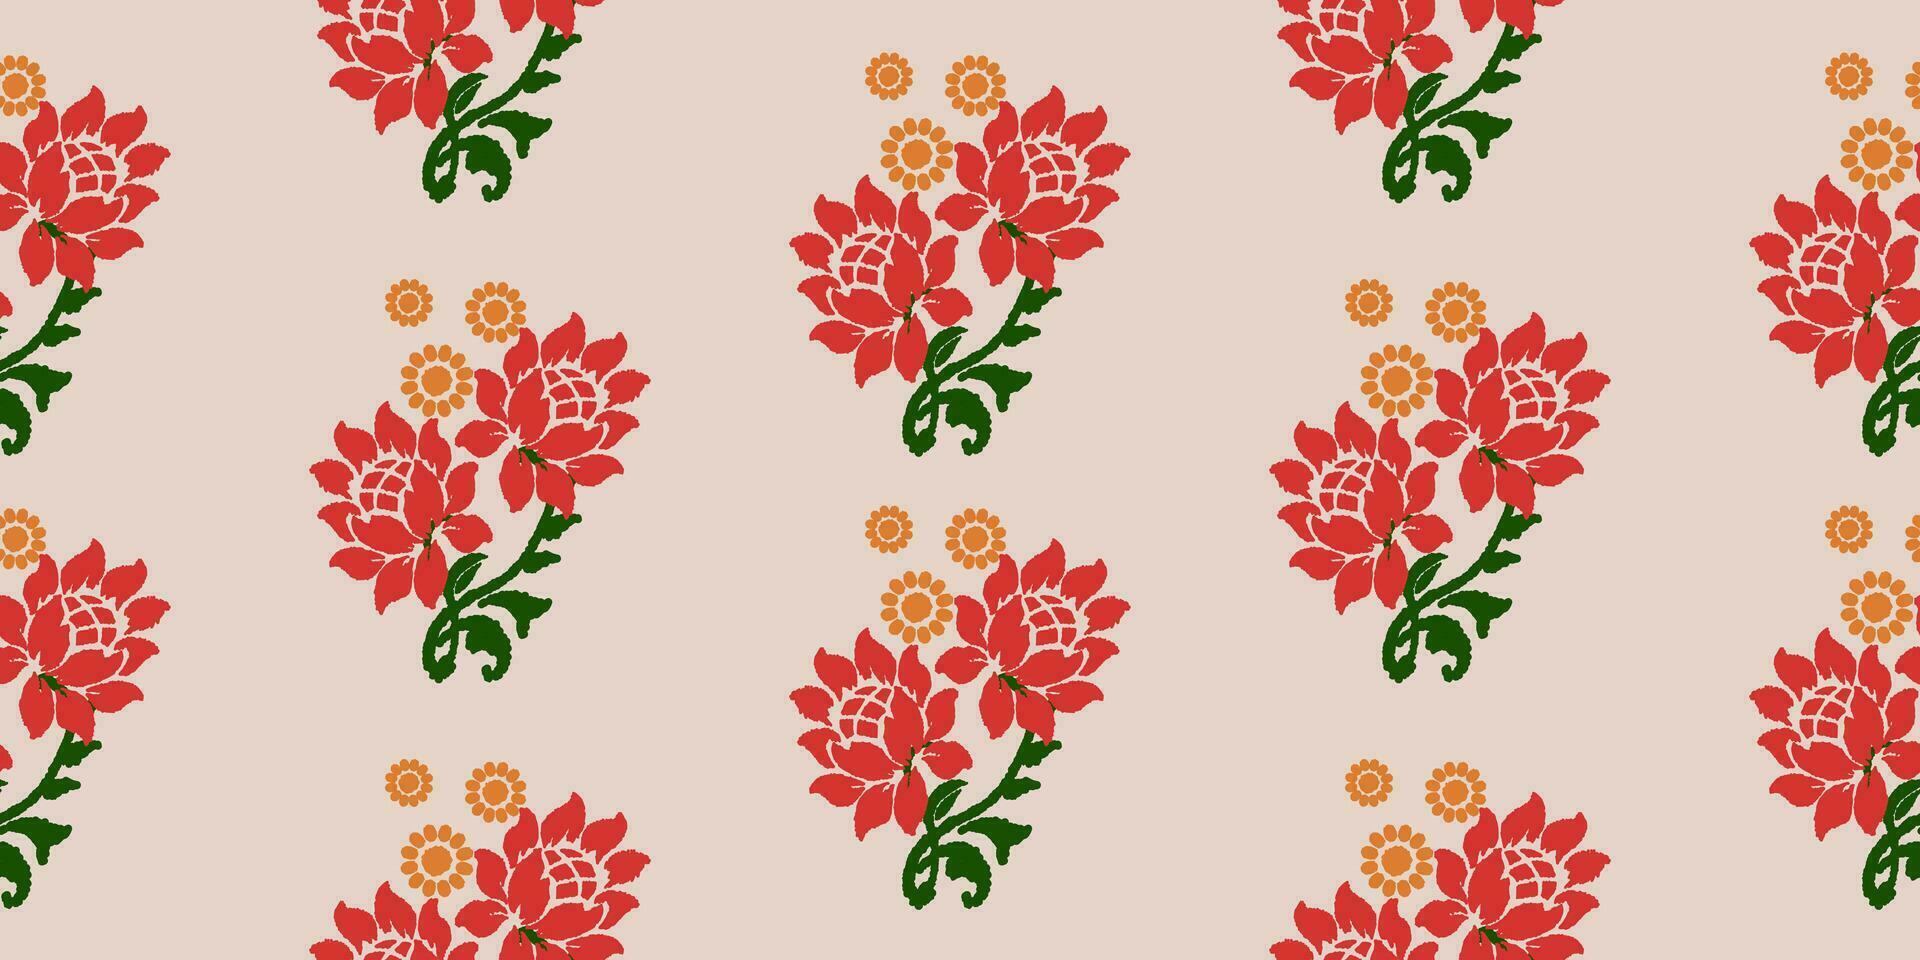 ikat blommig broderi mönster på ljus rosa bakgrund, traditionell geometrisk mönster, aztec stil abstrakt vektor illustration för bakgrund, matta, tapet, kläder, batik omslag, trasa.